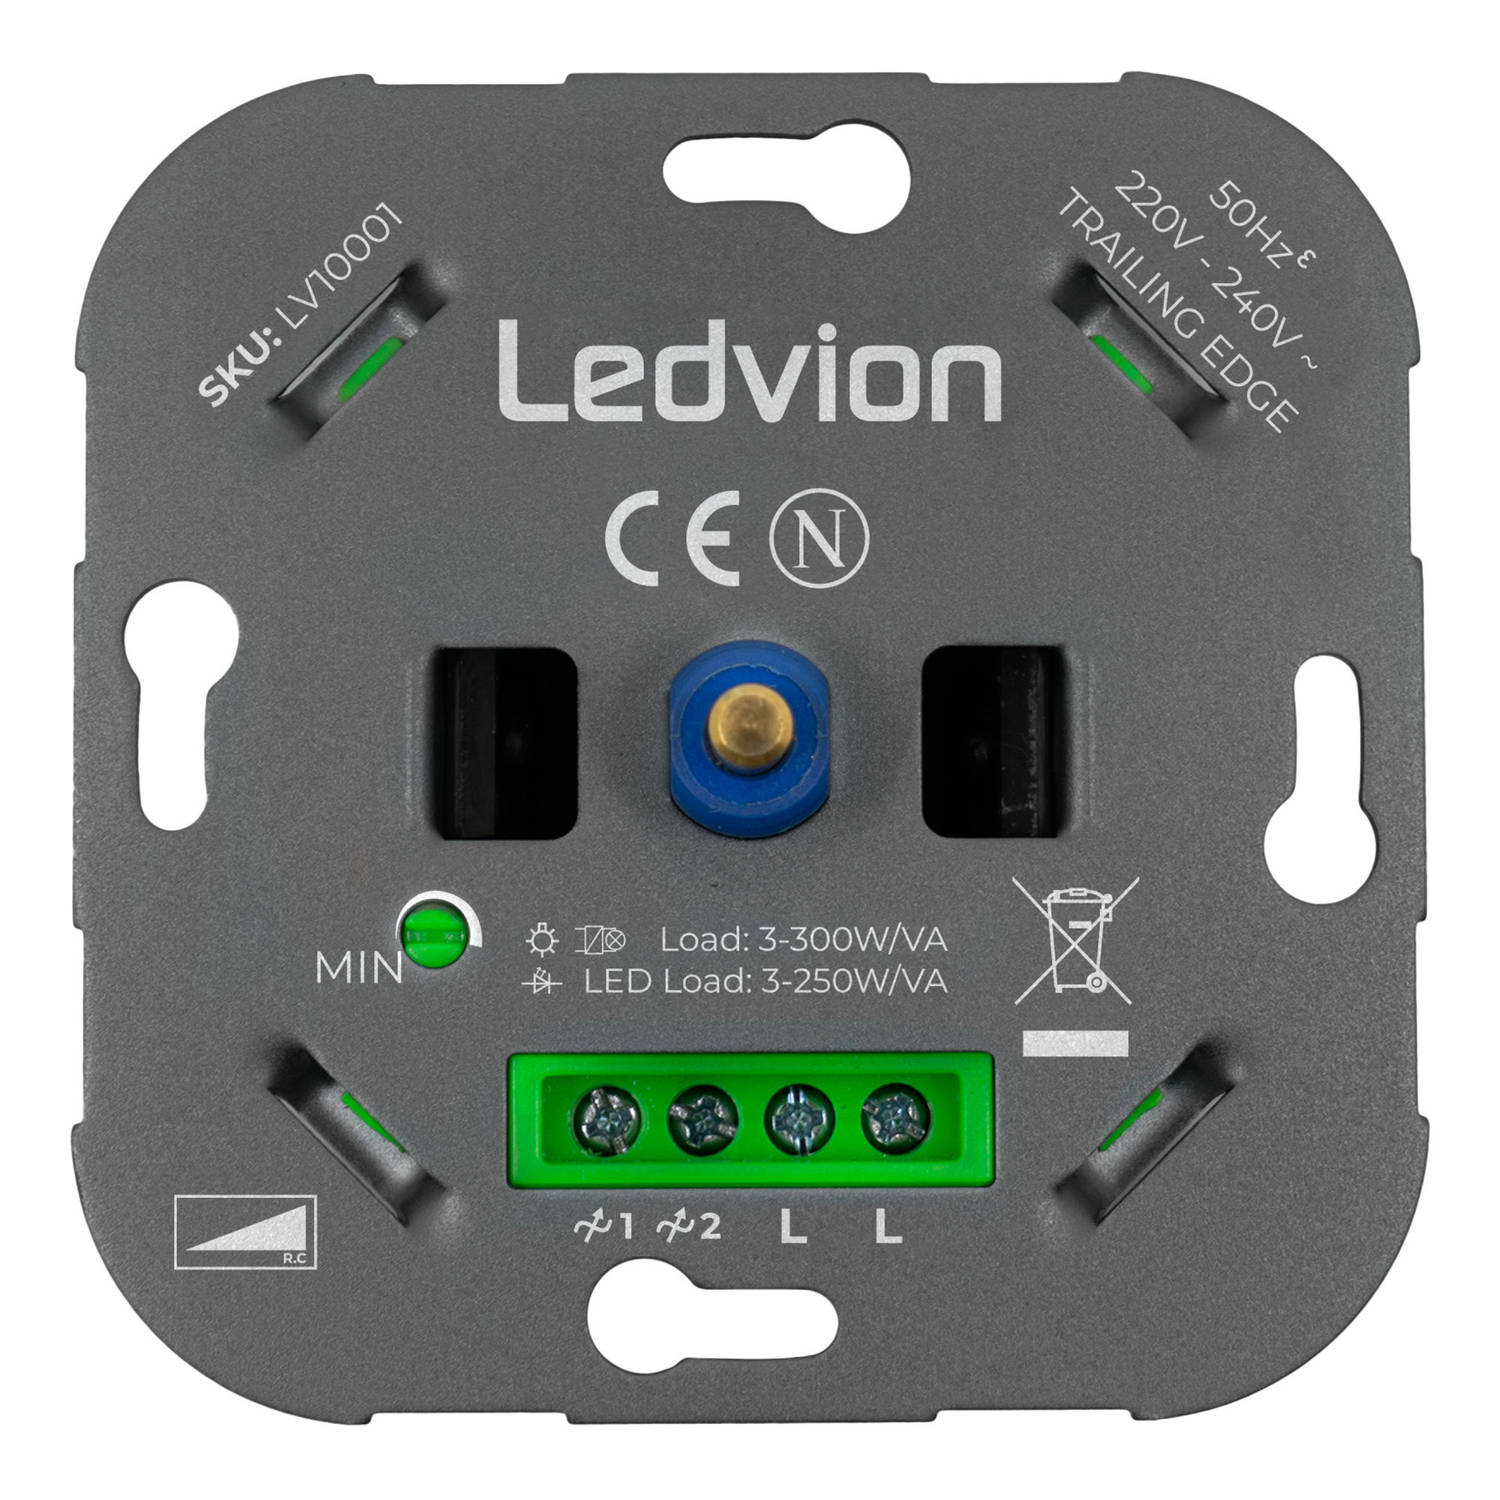 Ledvion LED Dimmer 3-250W LED 220-240V - Fase Afsnijding - Universeel